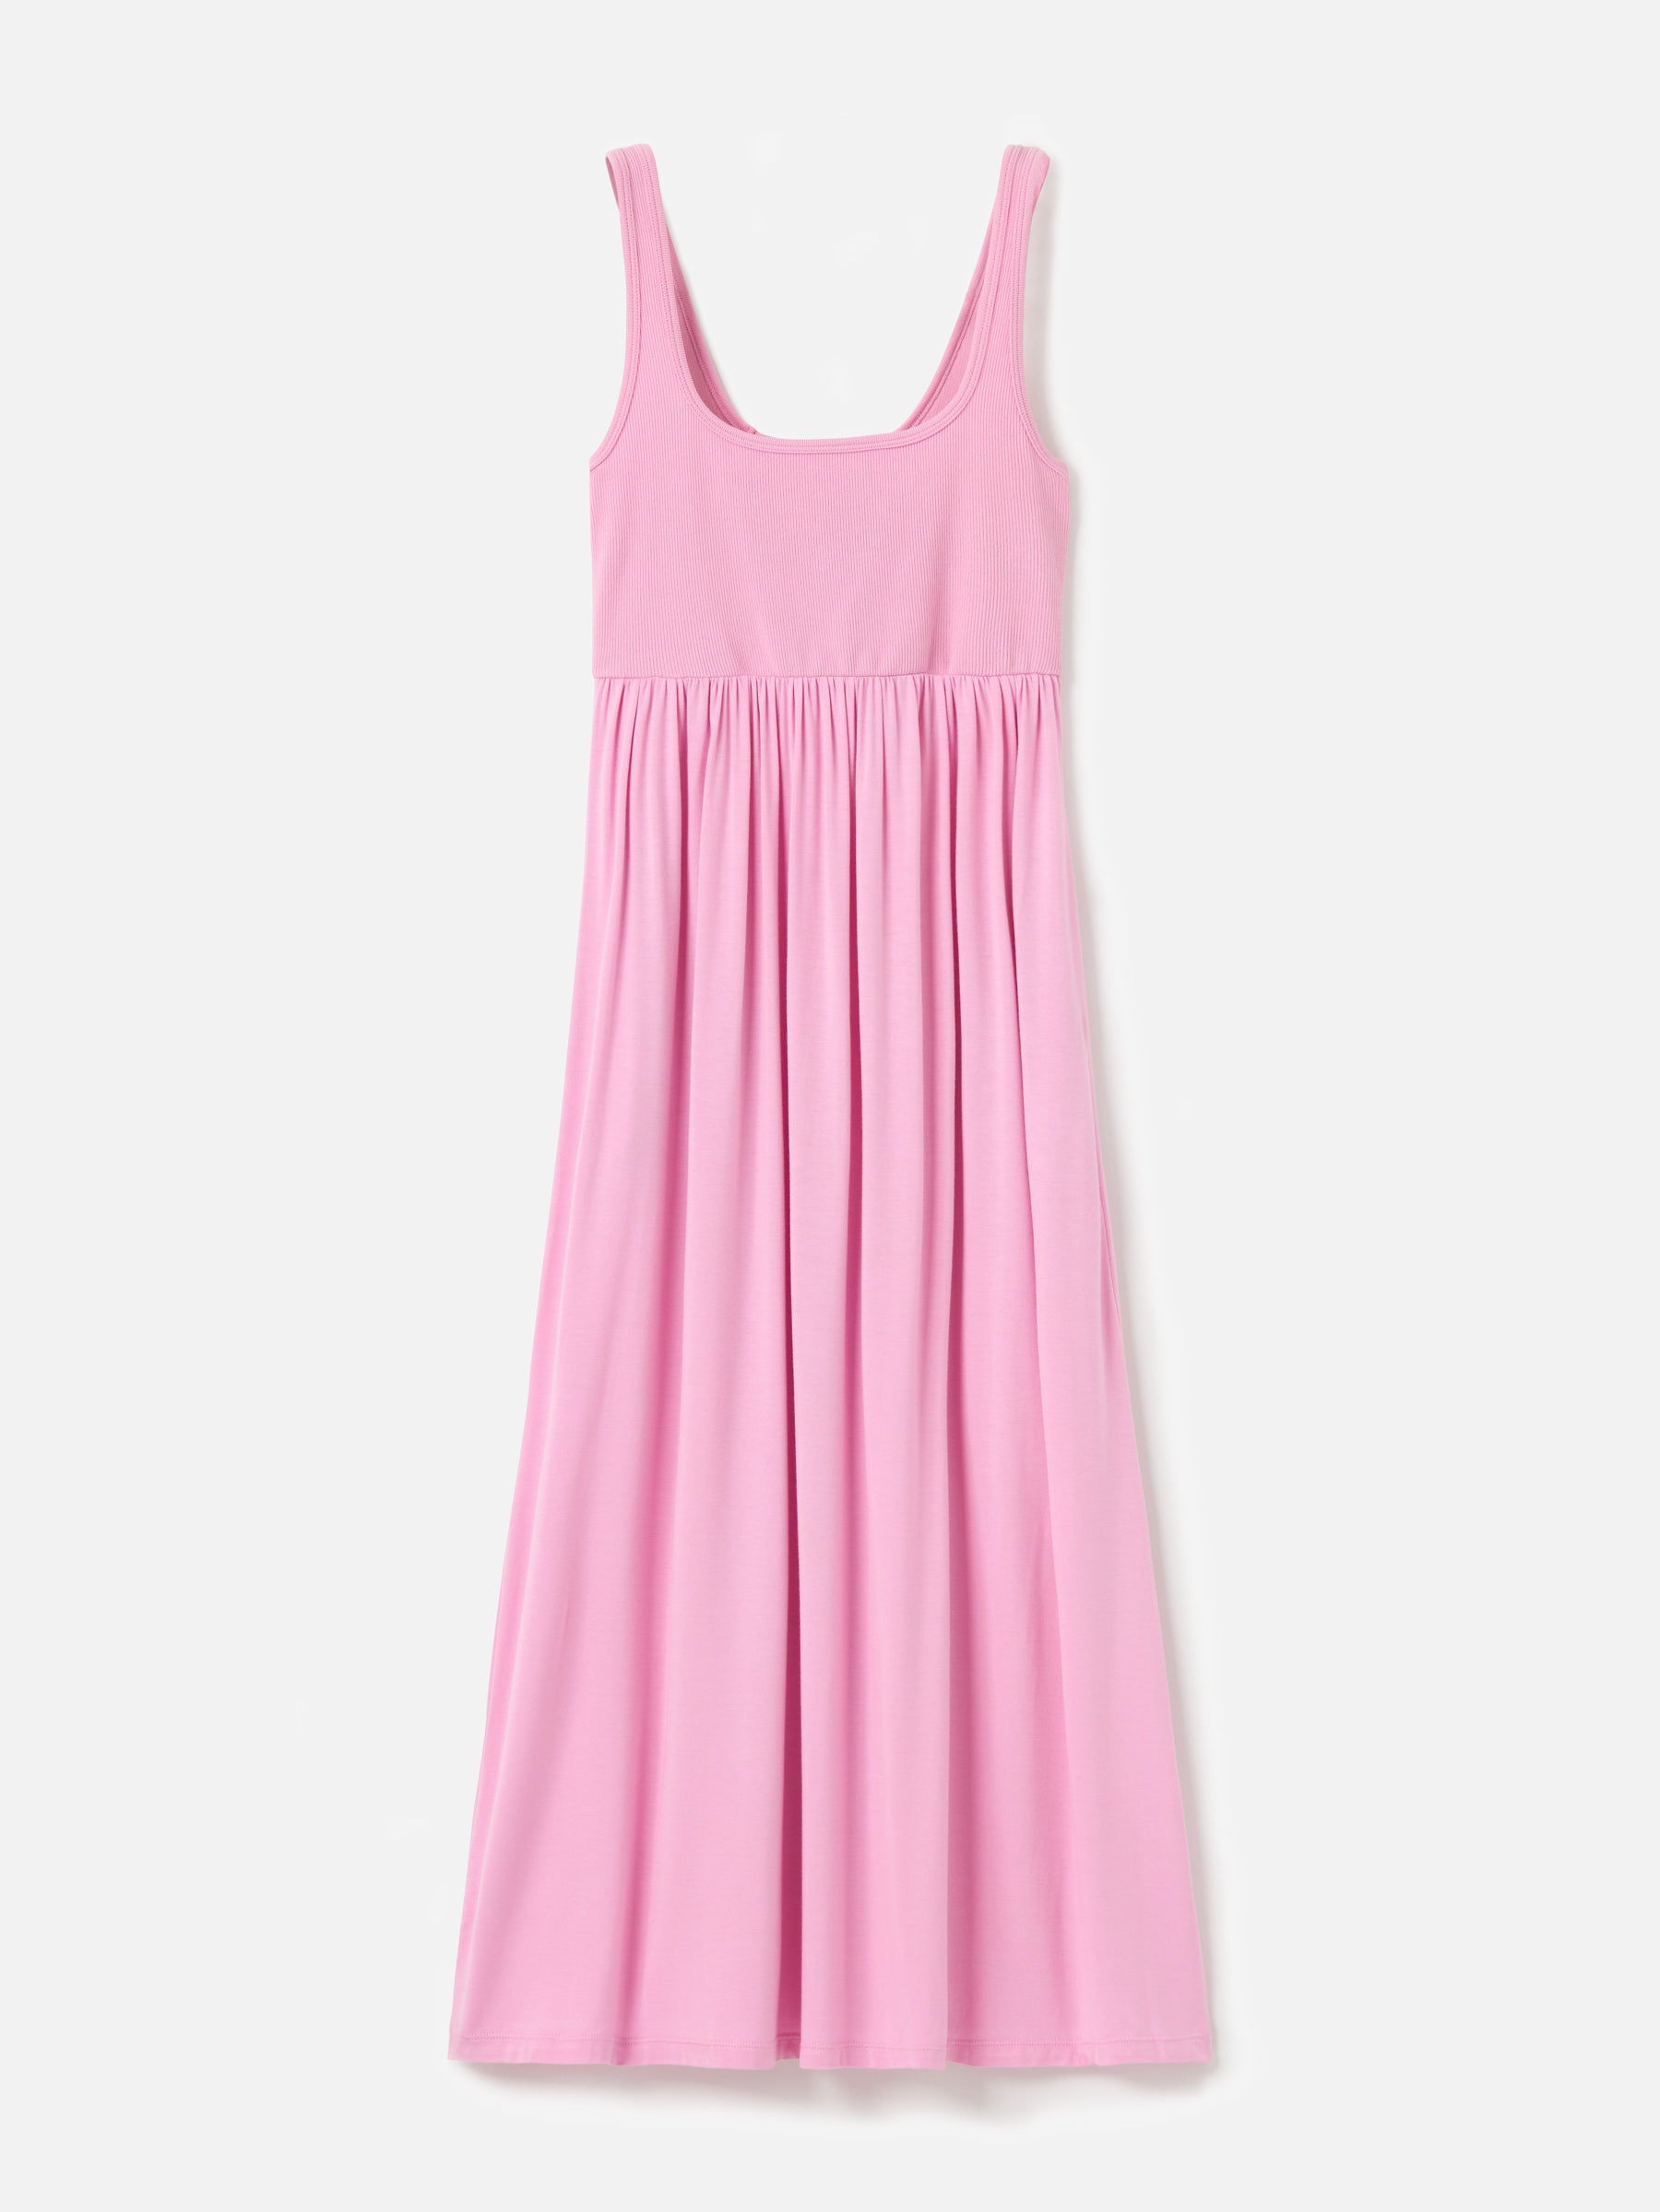 Dresses - Ribbon Luxe - Nova Square Neck Dress - PLENTY